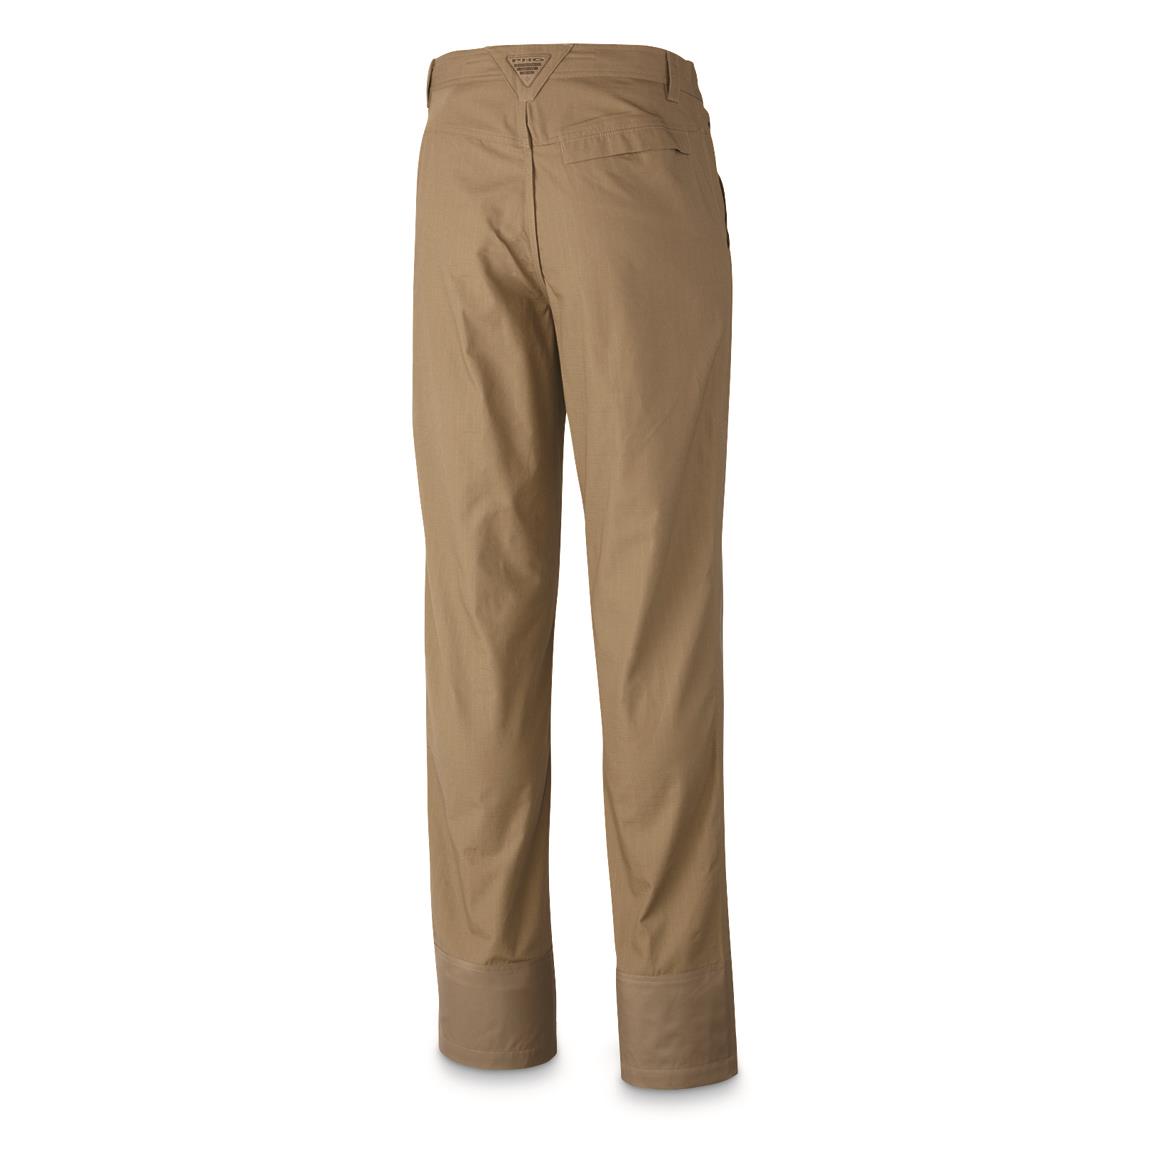 Download Columbia Men's Ptarmigan Upland Brush Pants - 689513, Camo ...